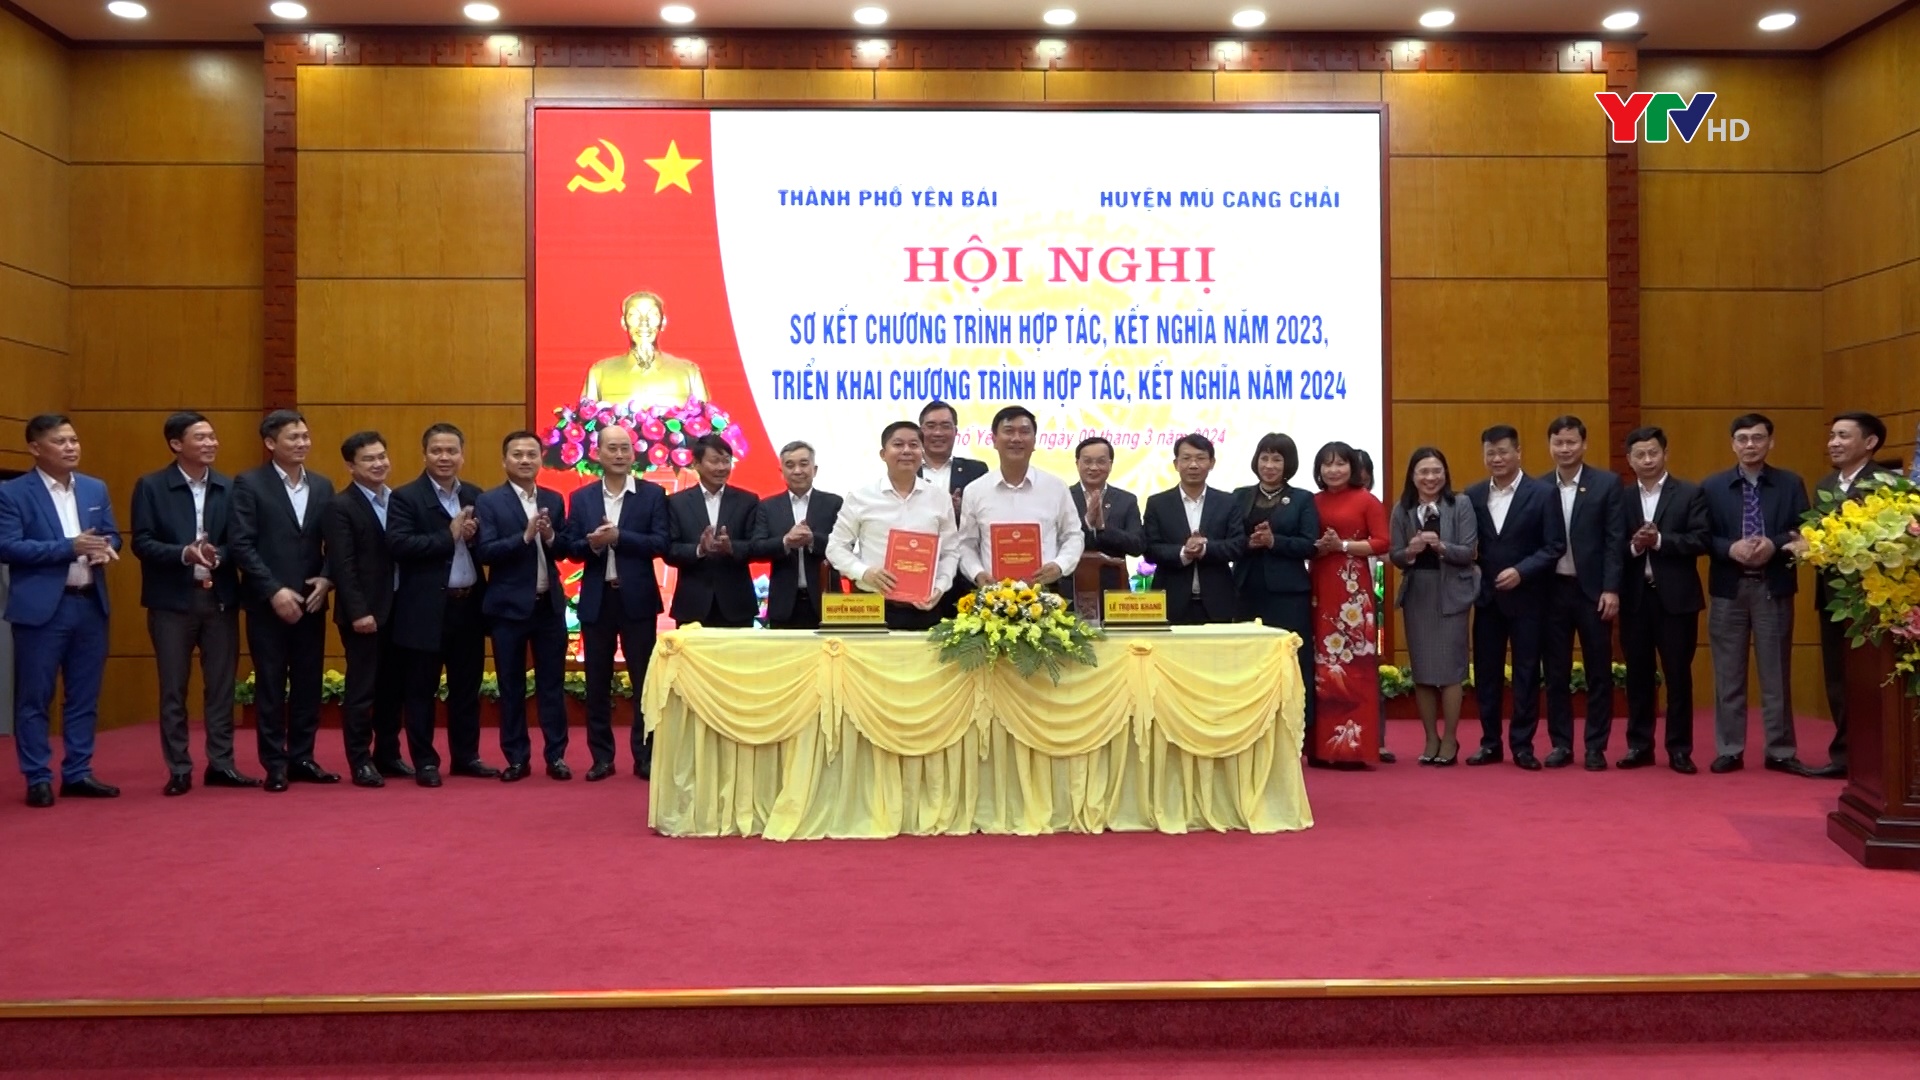 Thành phố Yên Bái và huyện Mù Cang Chải tăng cường hợp tác kết nghĩa